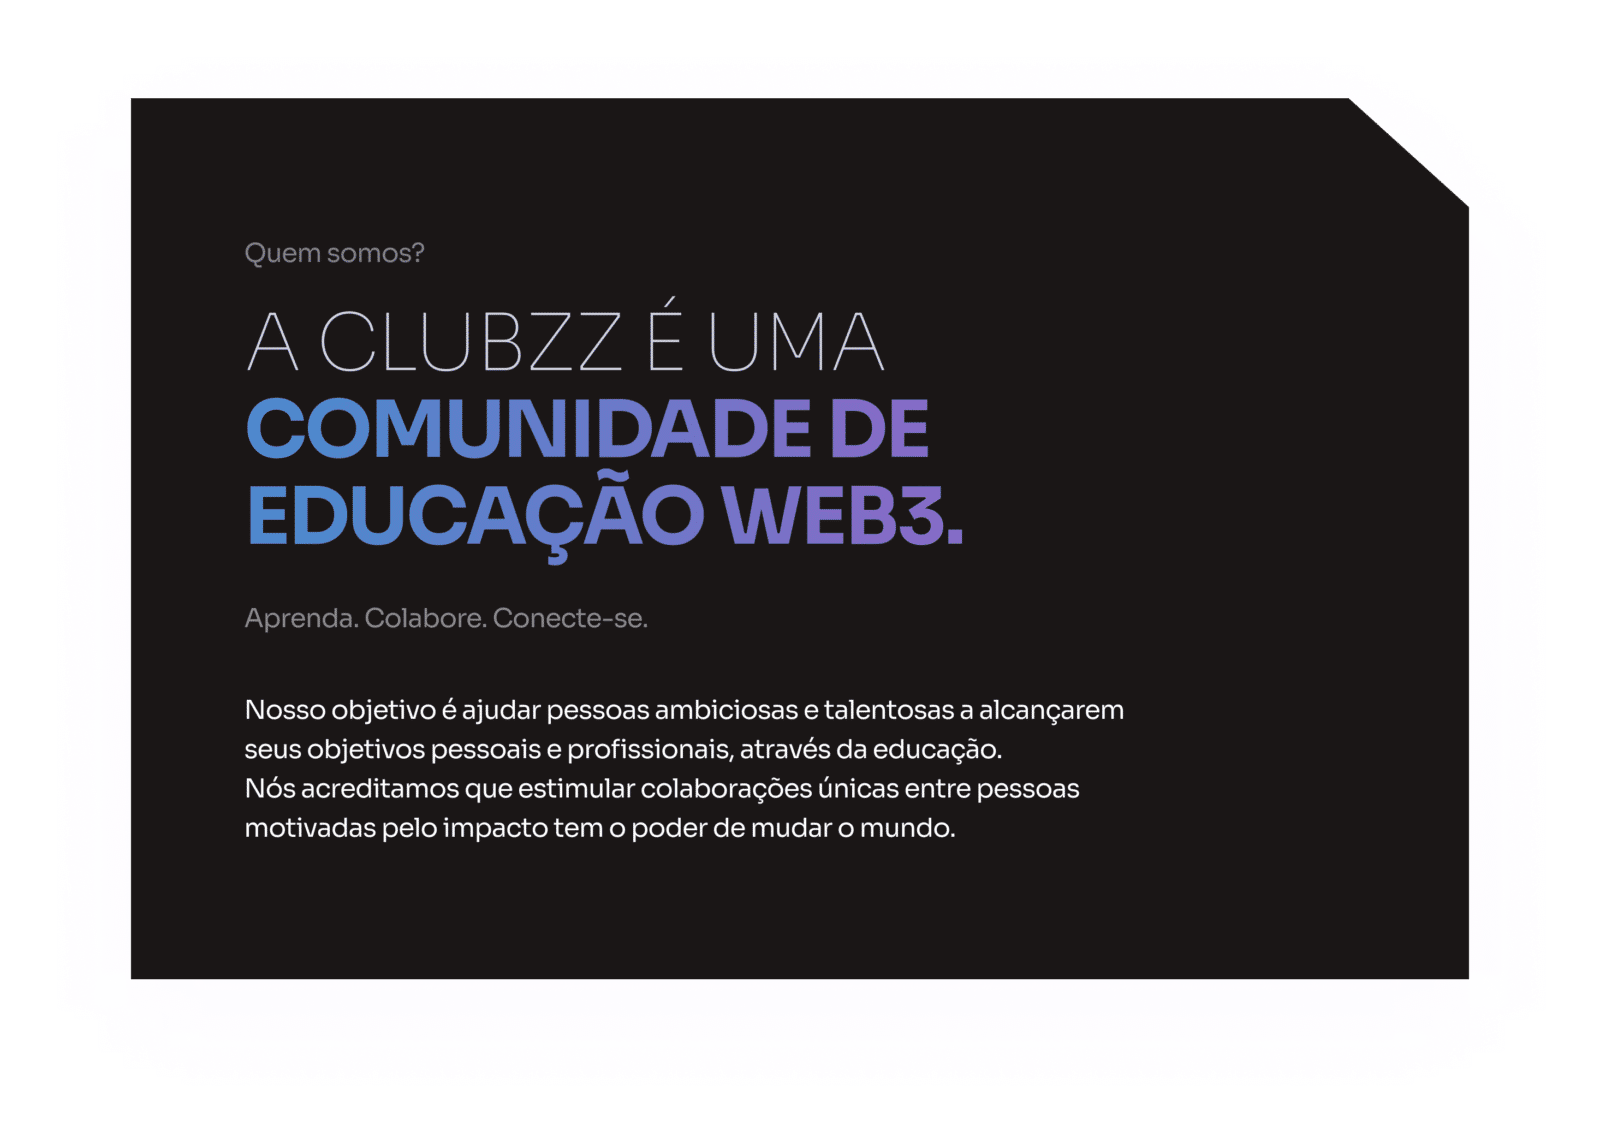 A Clubzz é uma comunidade de educação WEB3.